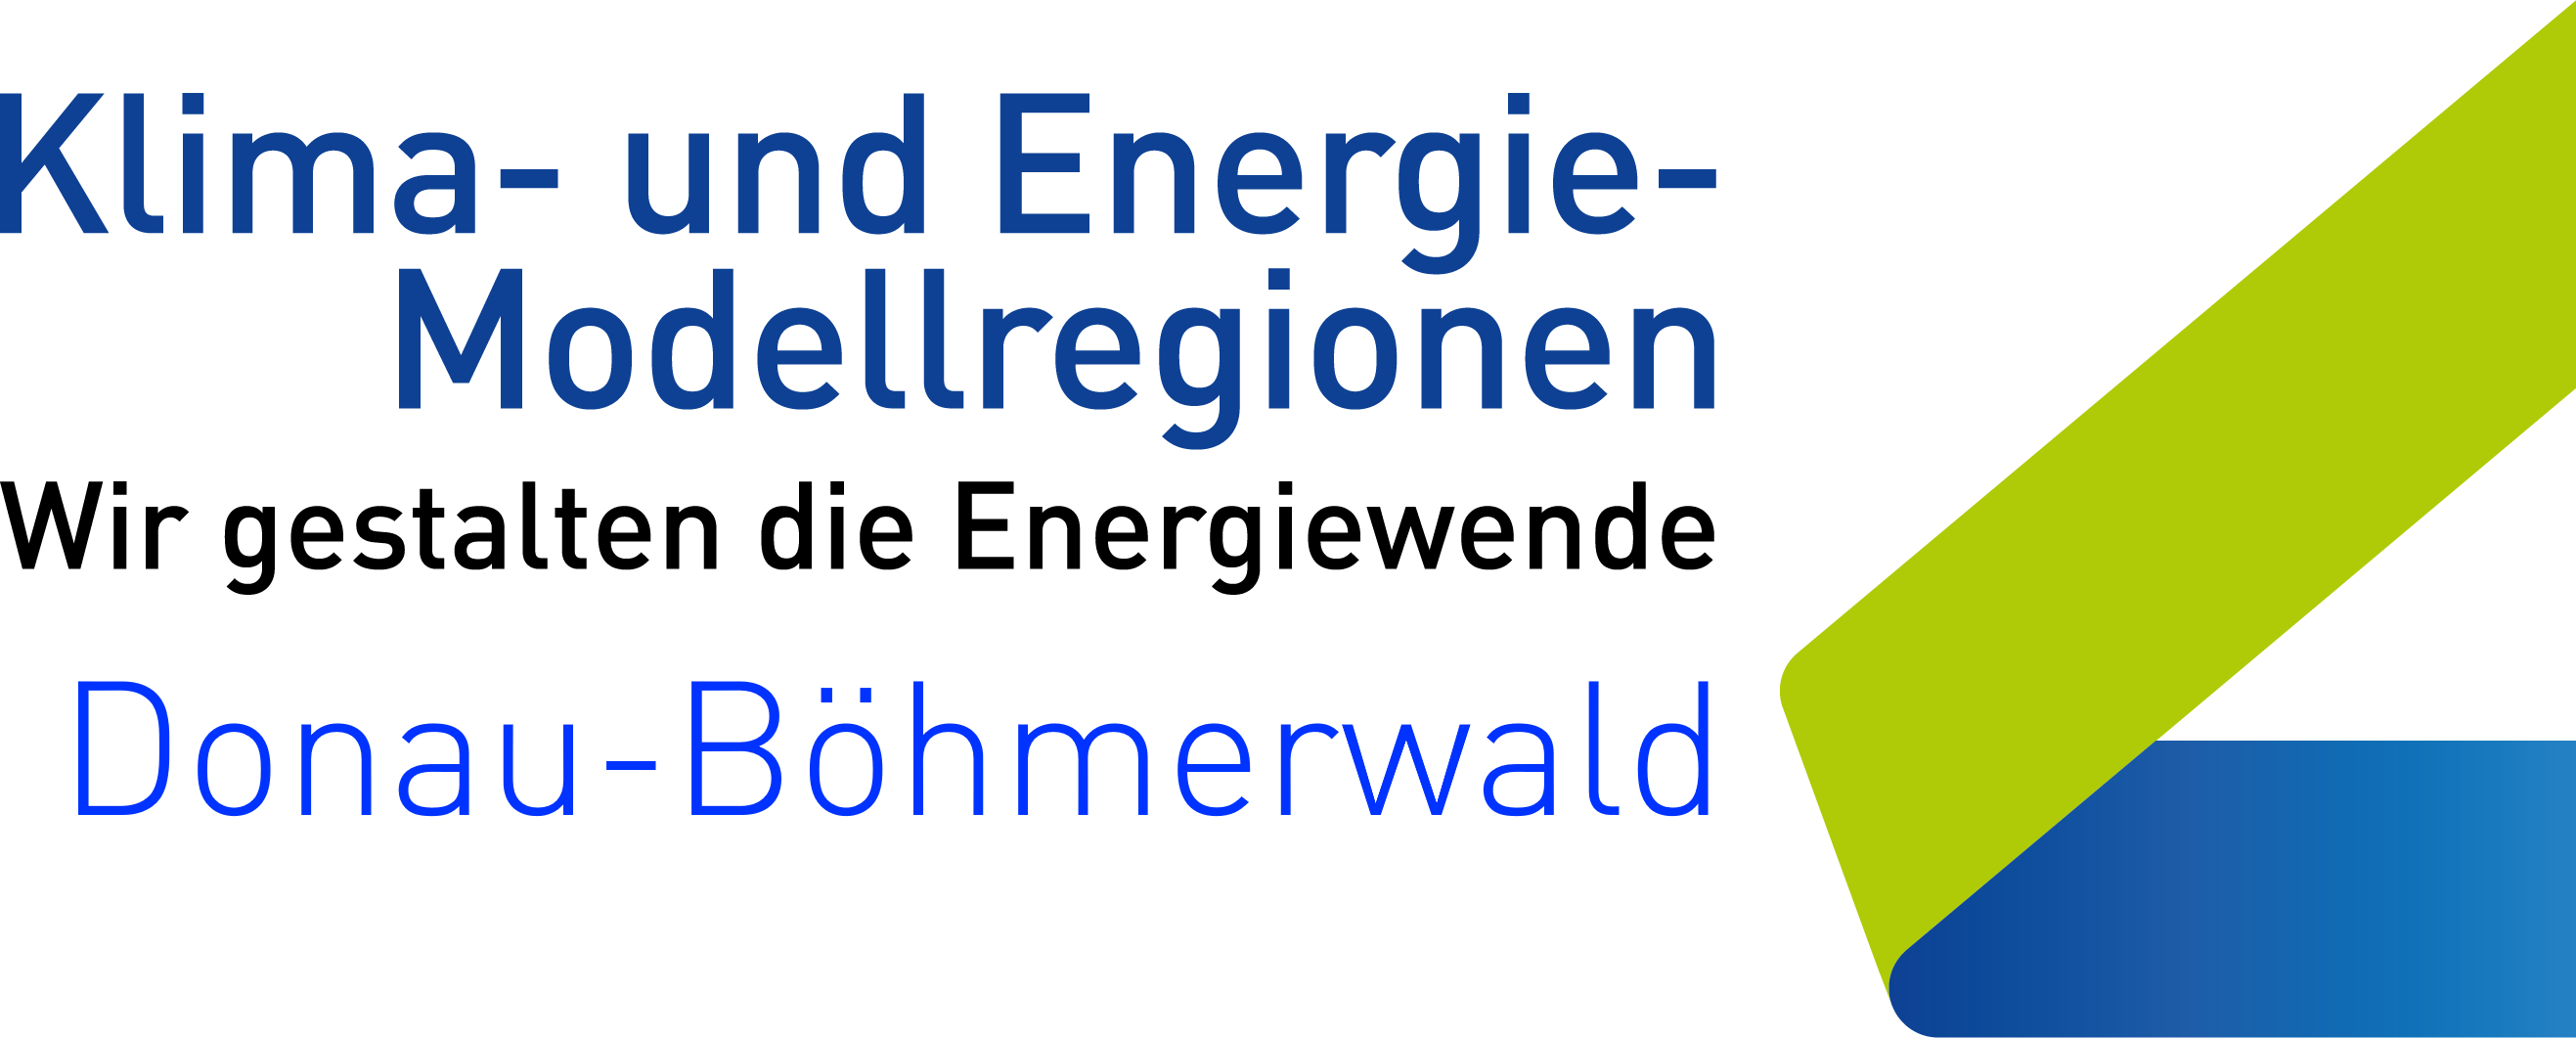 Klima- und Energiemodellregion Donau-Böhmerwald